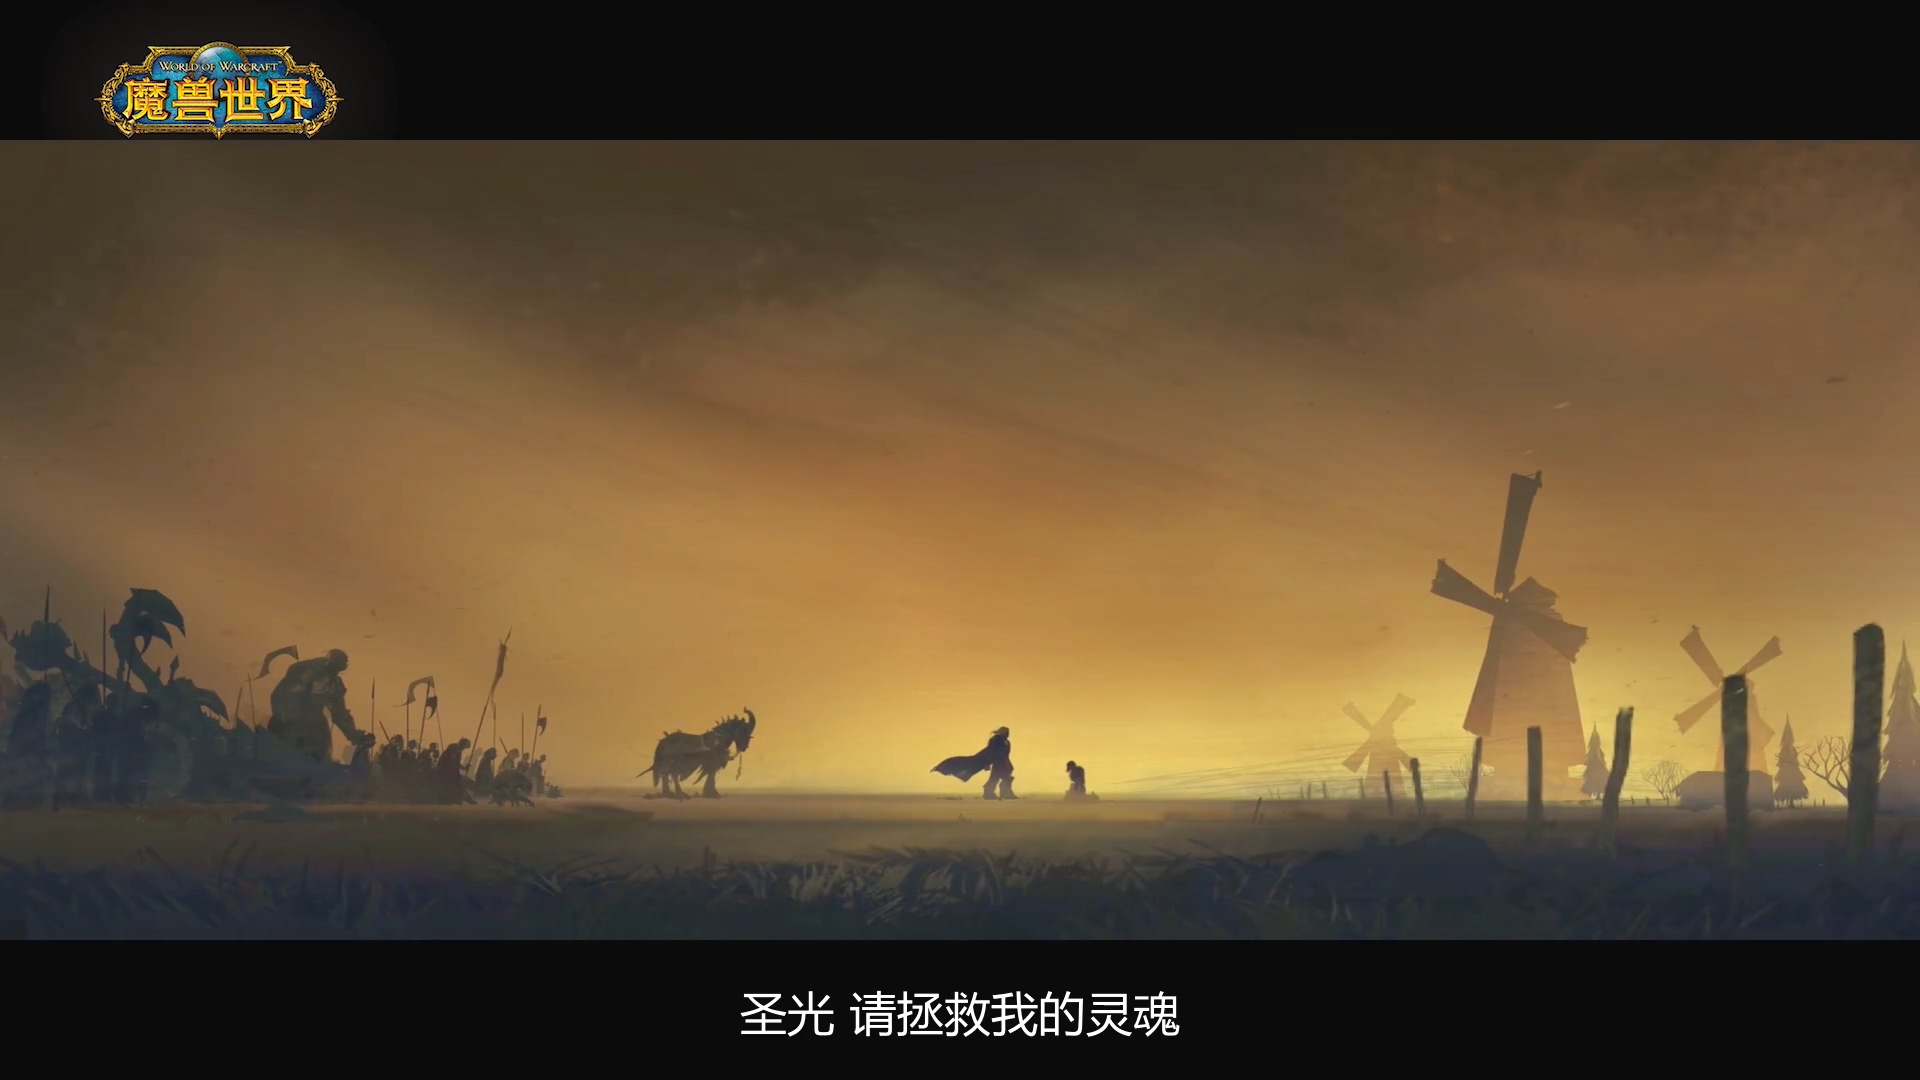 《魔兽世界》“暗影国度”系列动画短片“彼岸之地”预告放出 将于8月28日播出